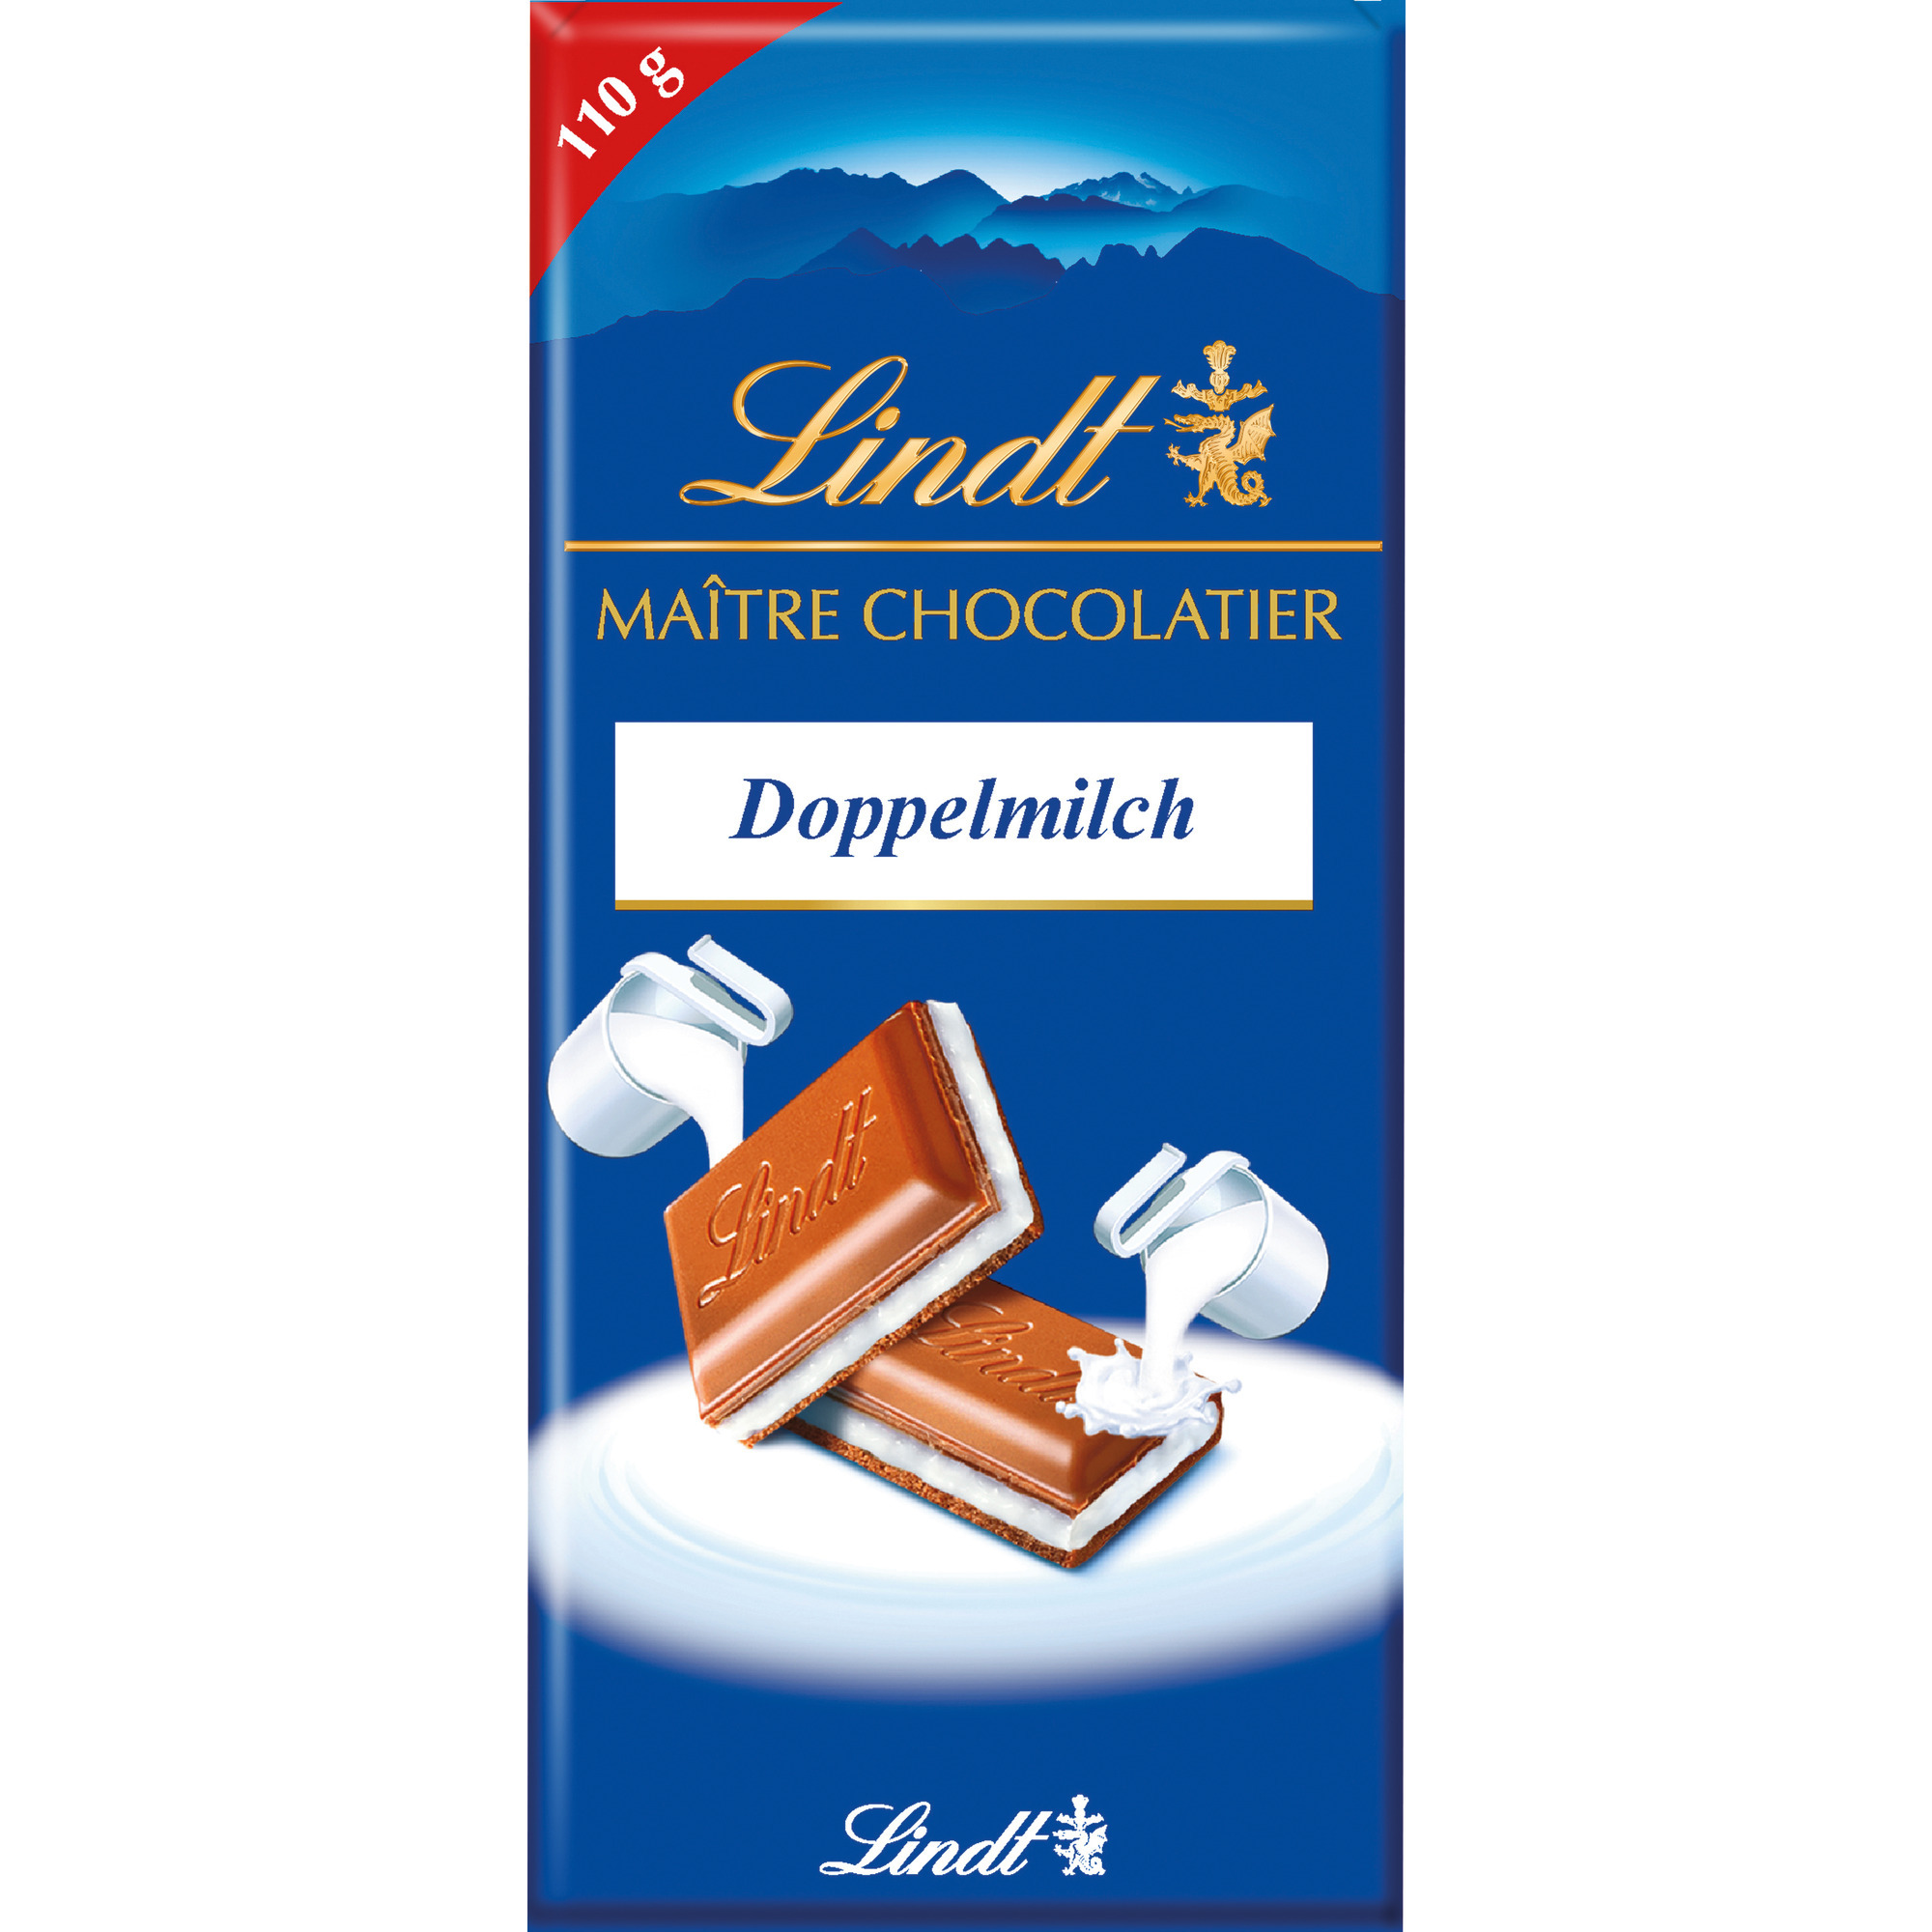 Lindt Maitre Chocolatier 110g, Doppelm.